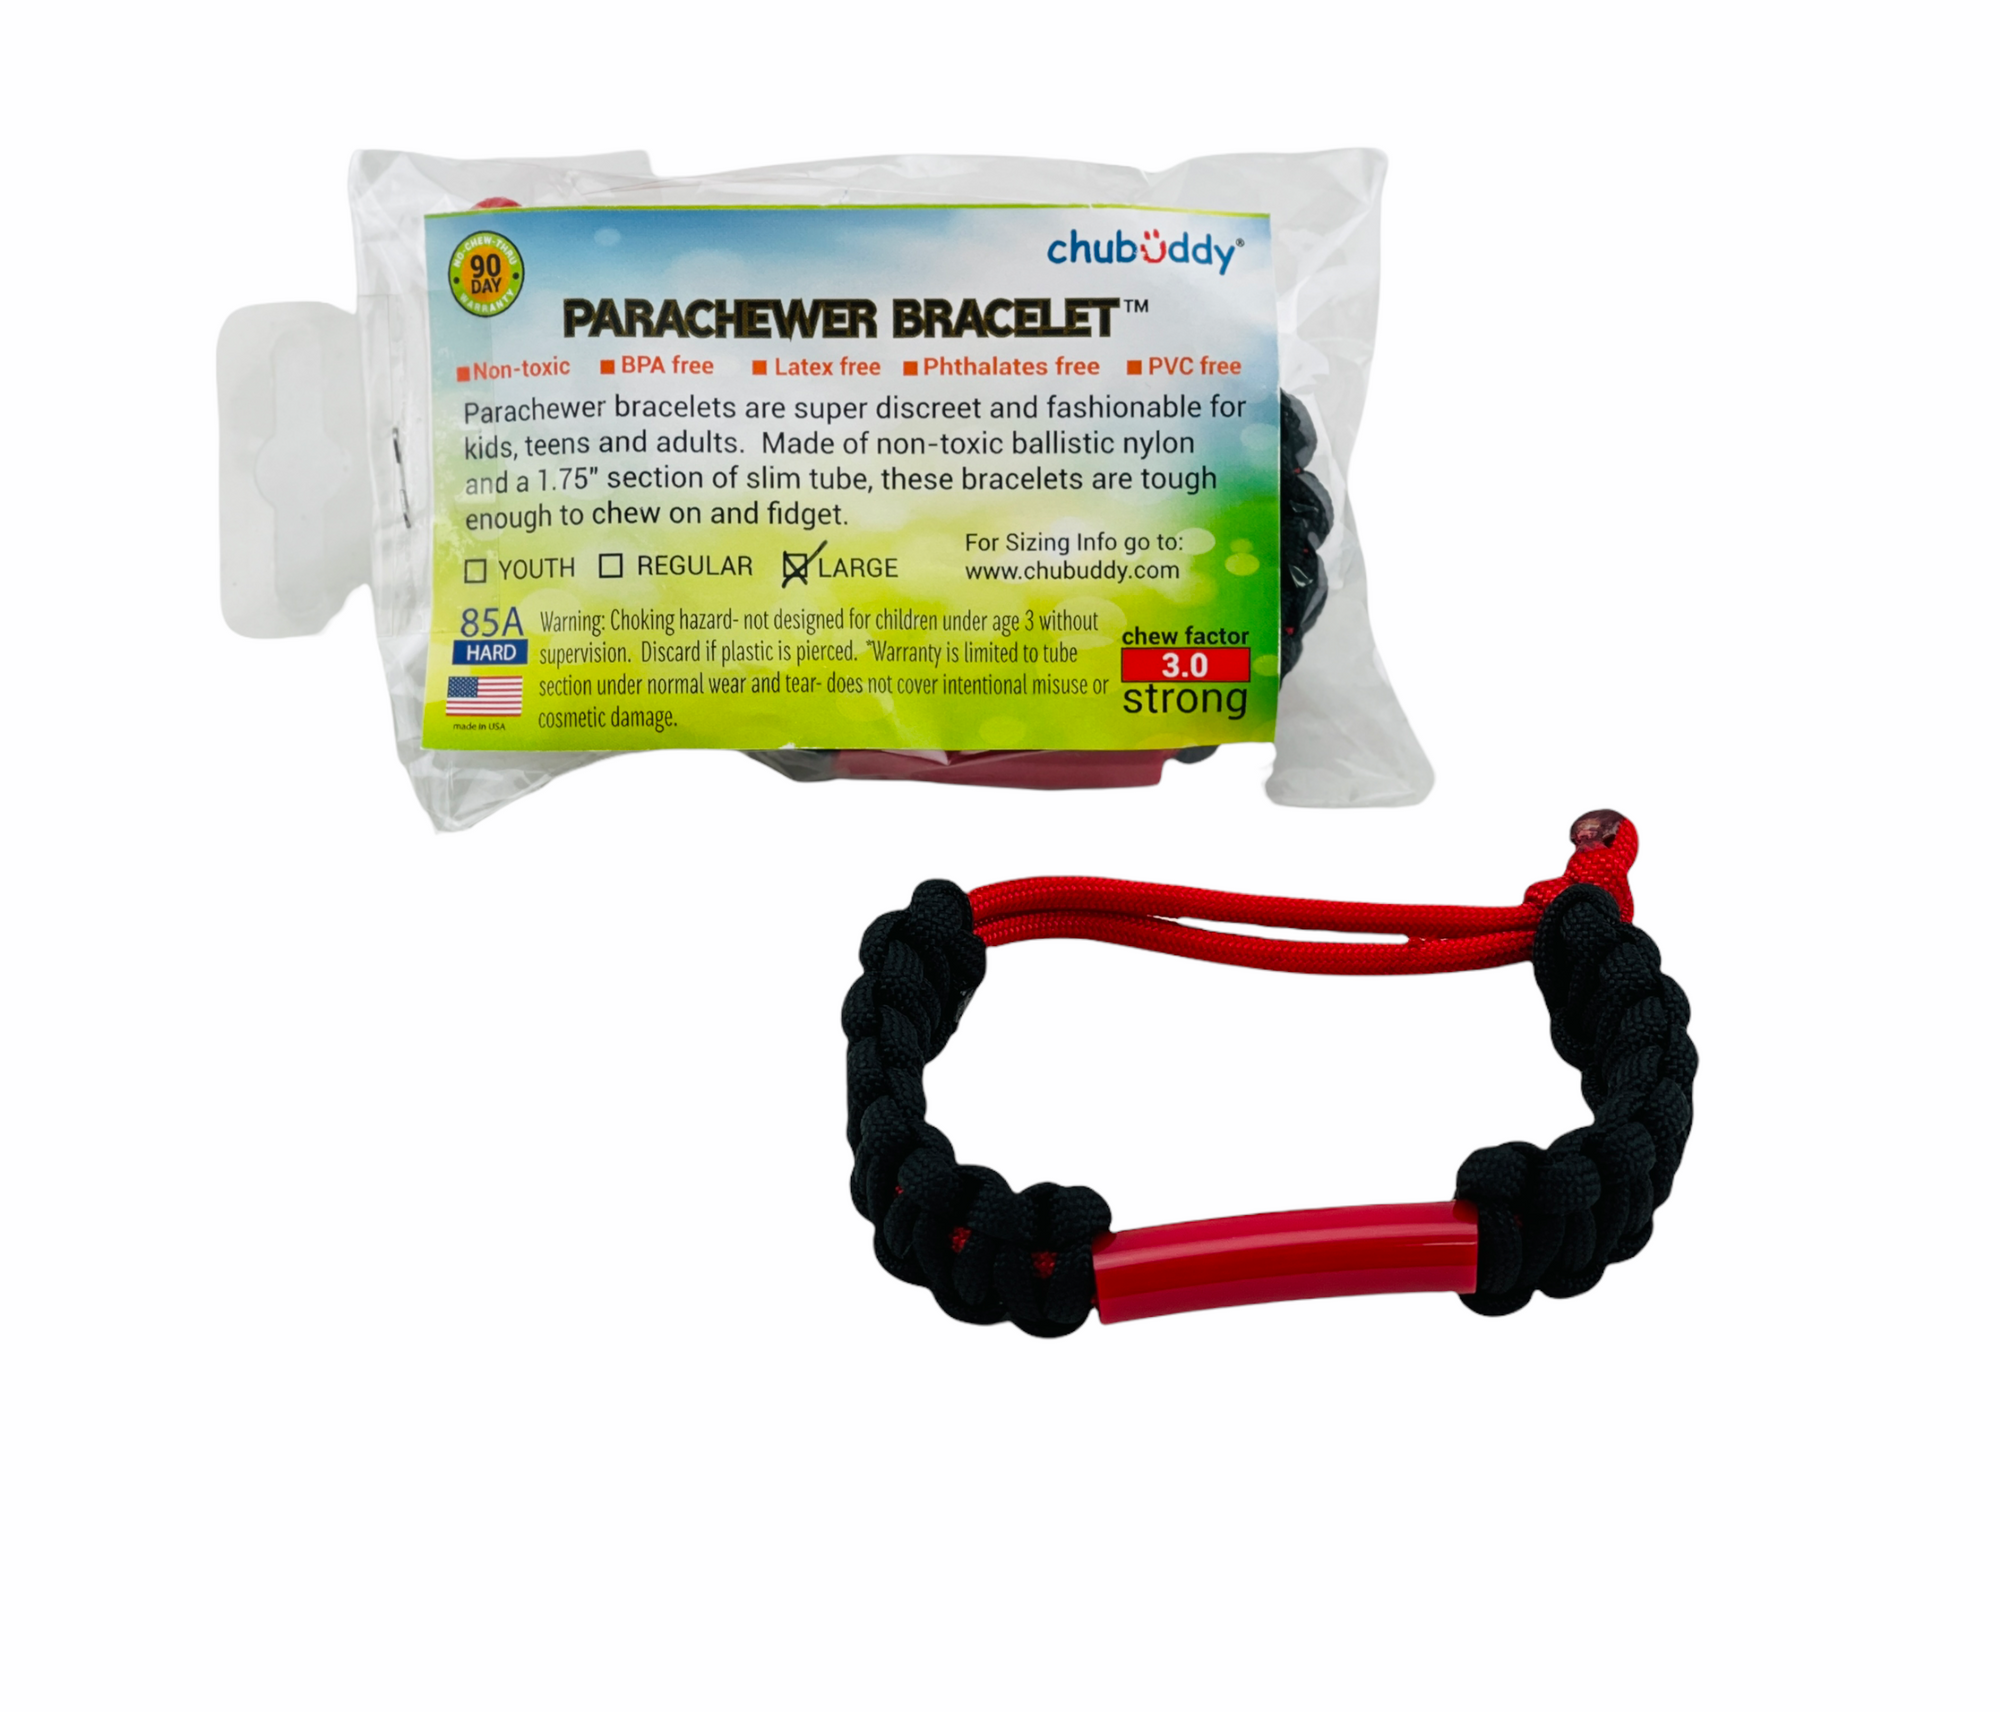 The Chubuddy Parachewer Bracelet large 